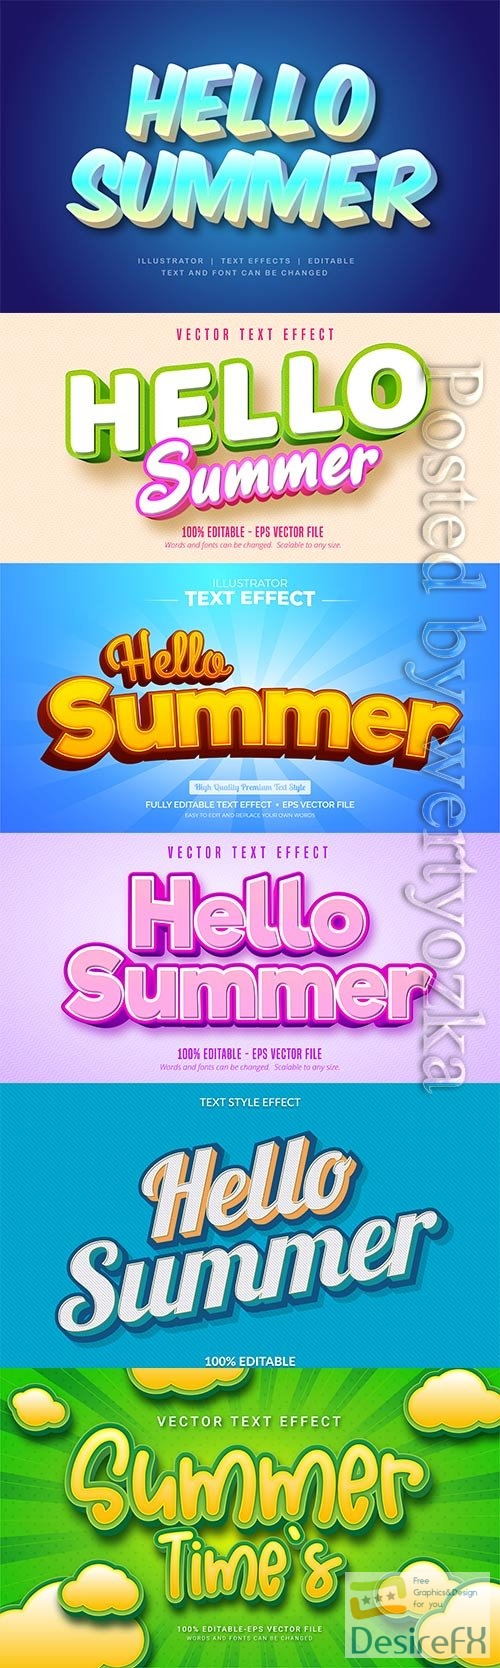 Hello summer text effect